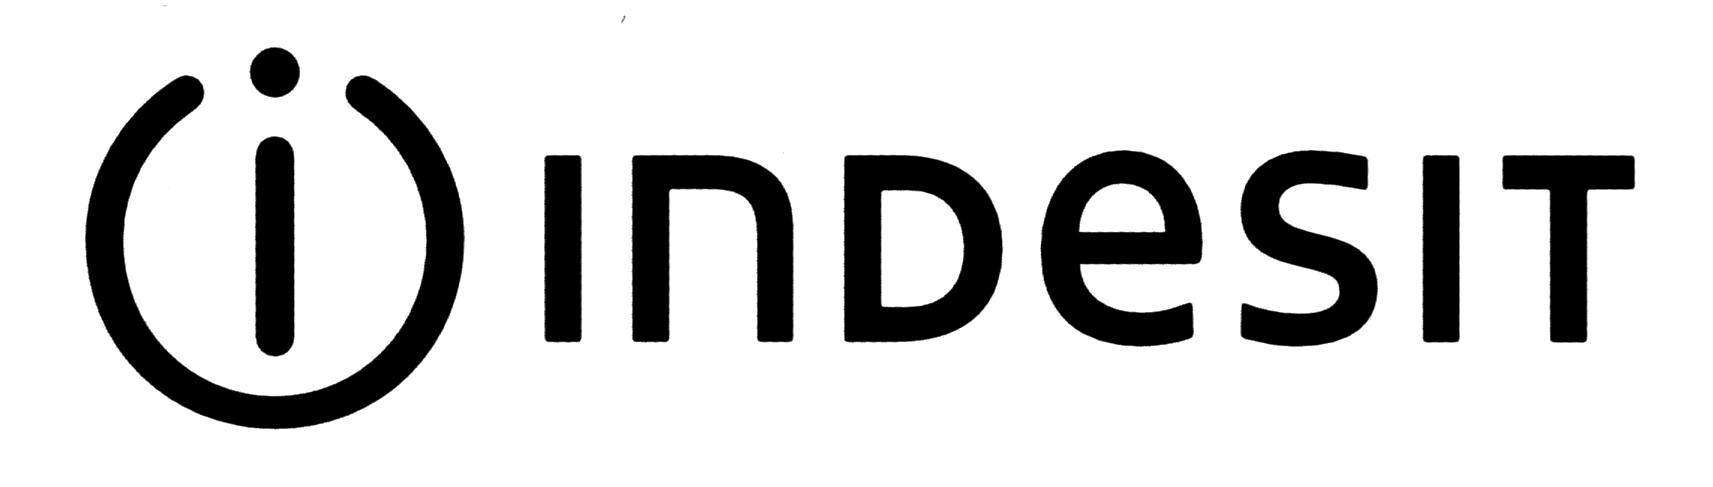 indesit-logo